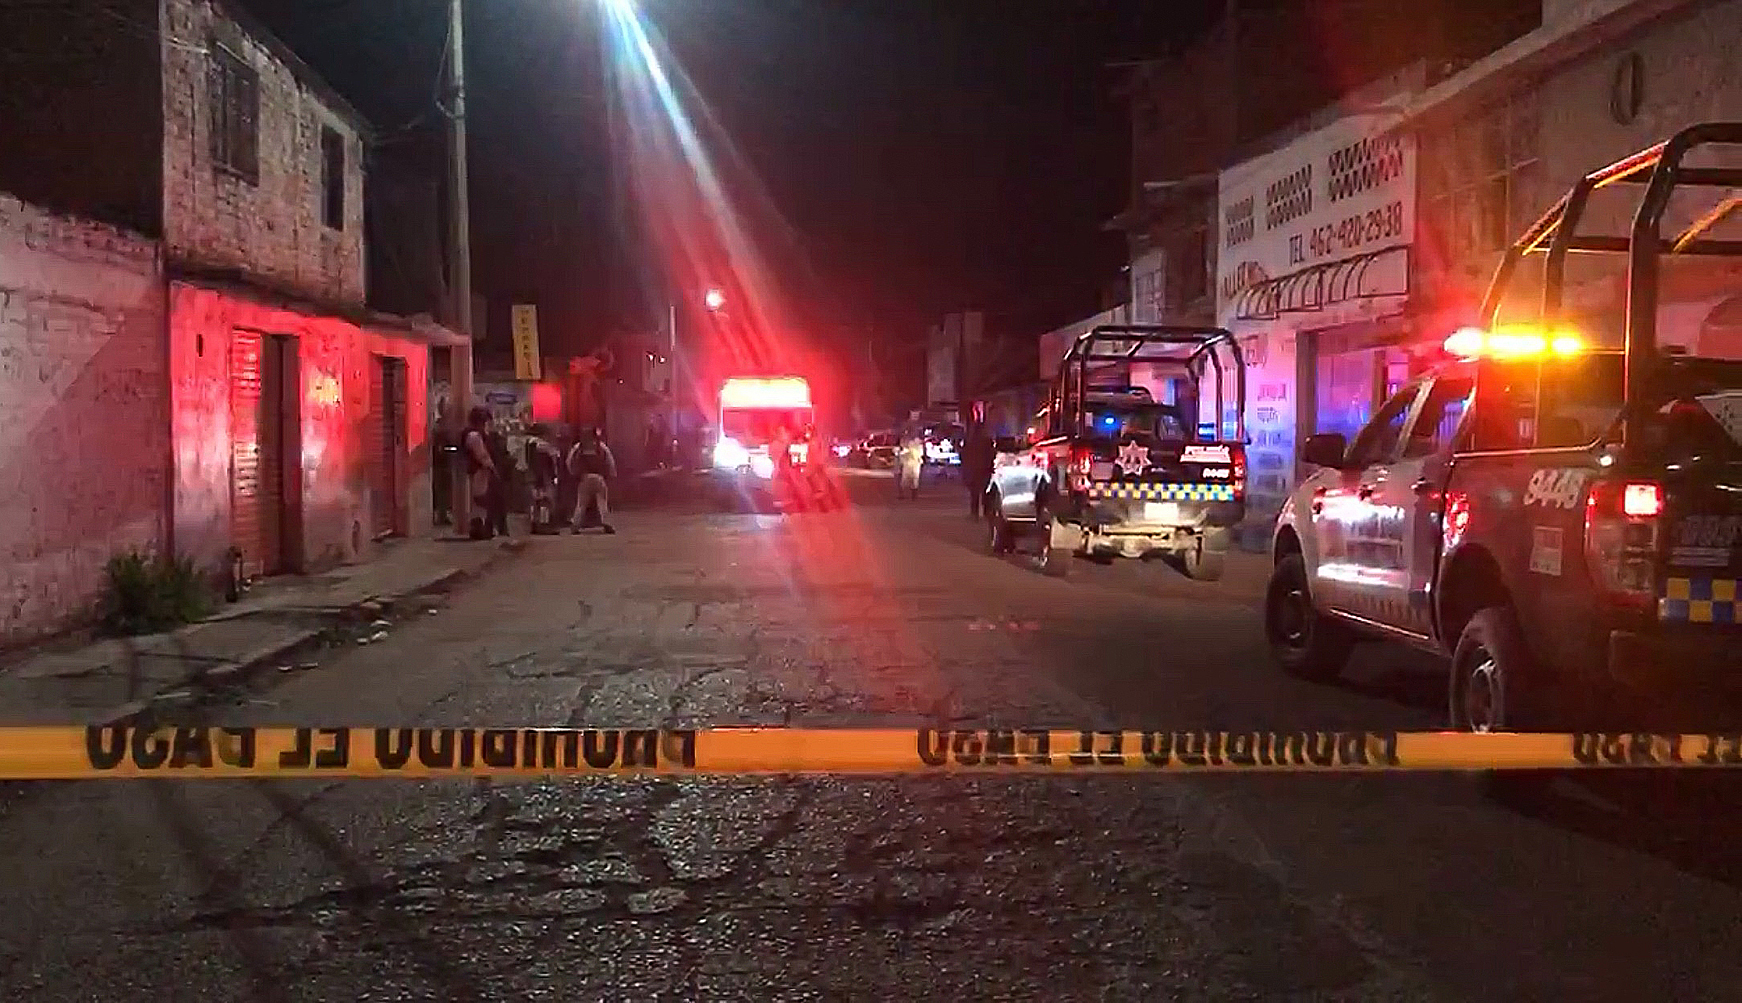 Una masacre en un bar deja 11 muertos en el estado mexicano de Guanajuato |  Internacional